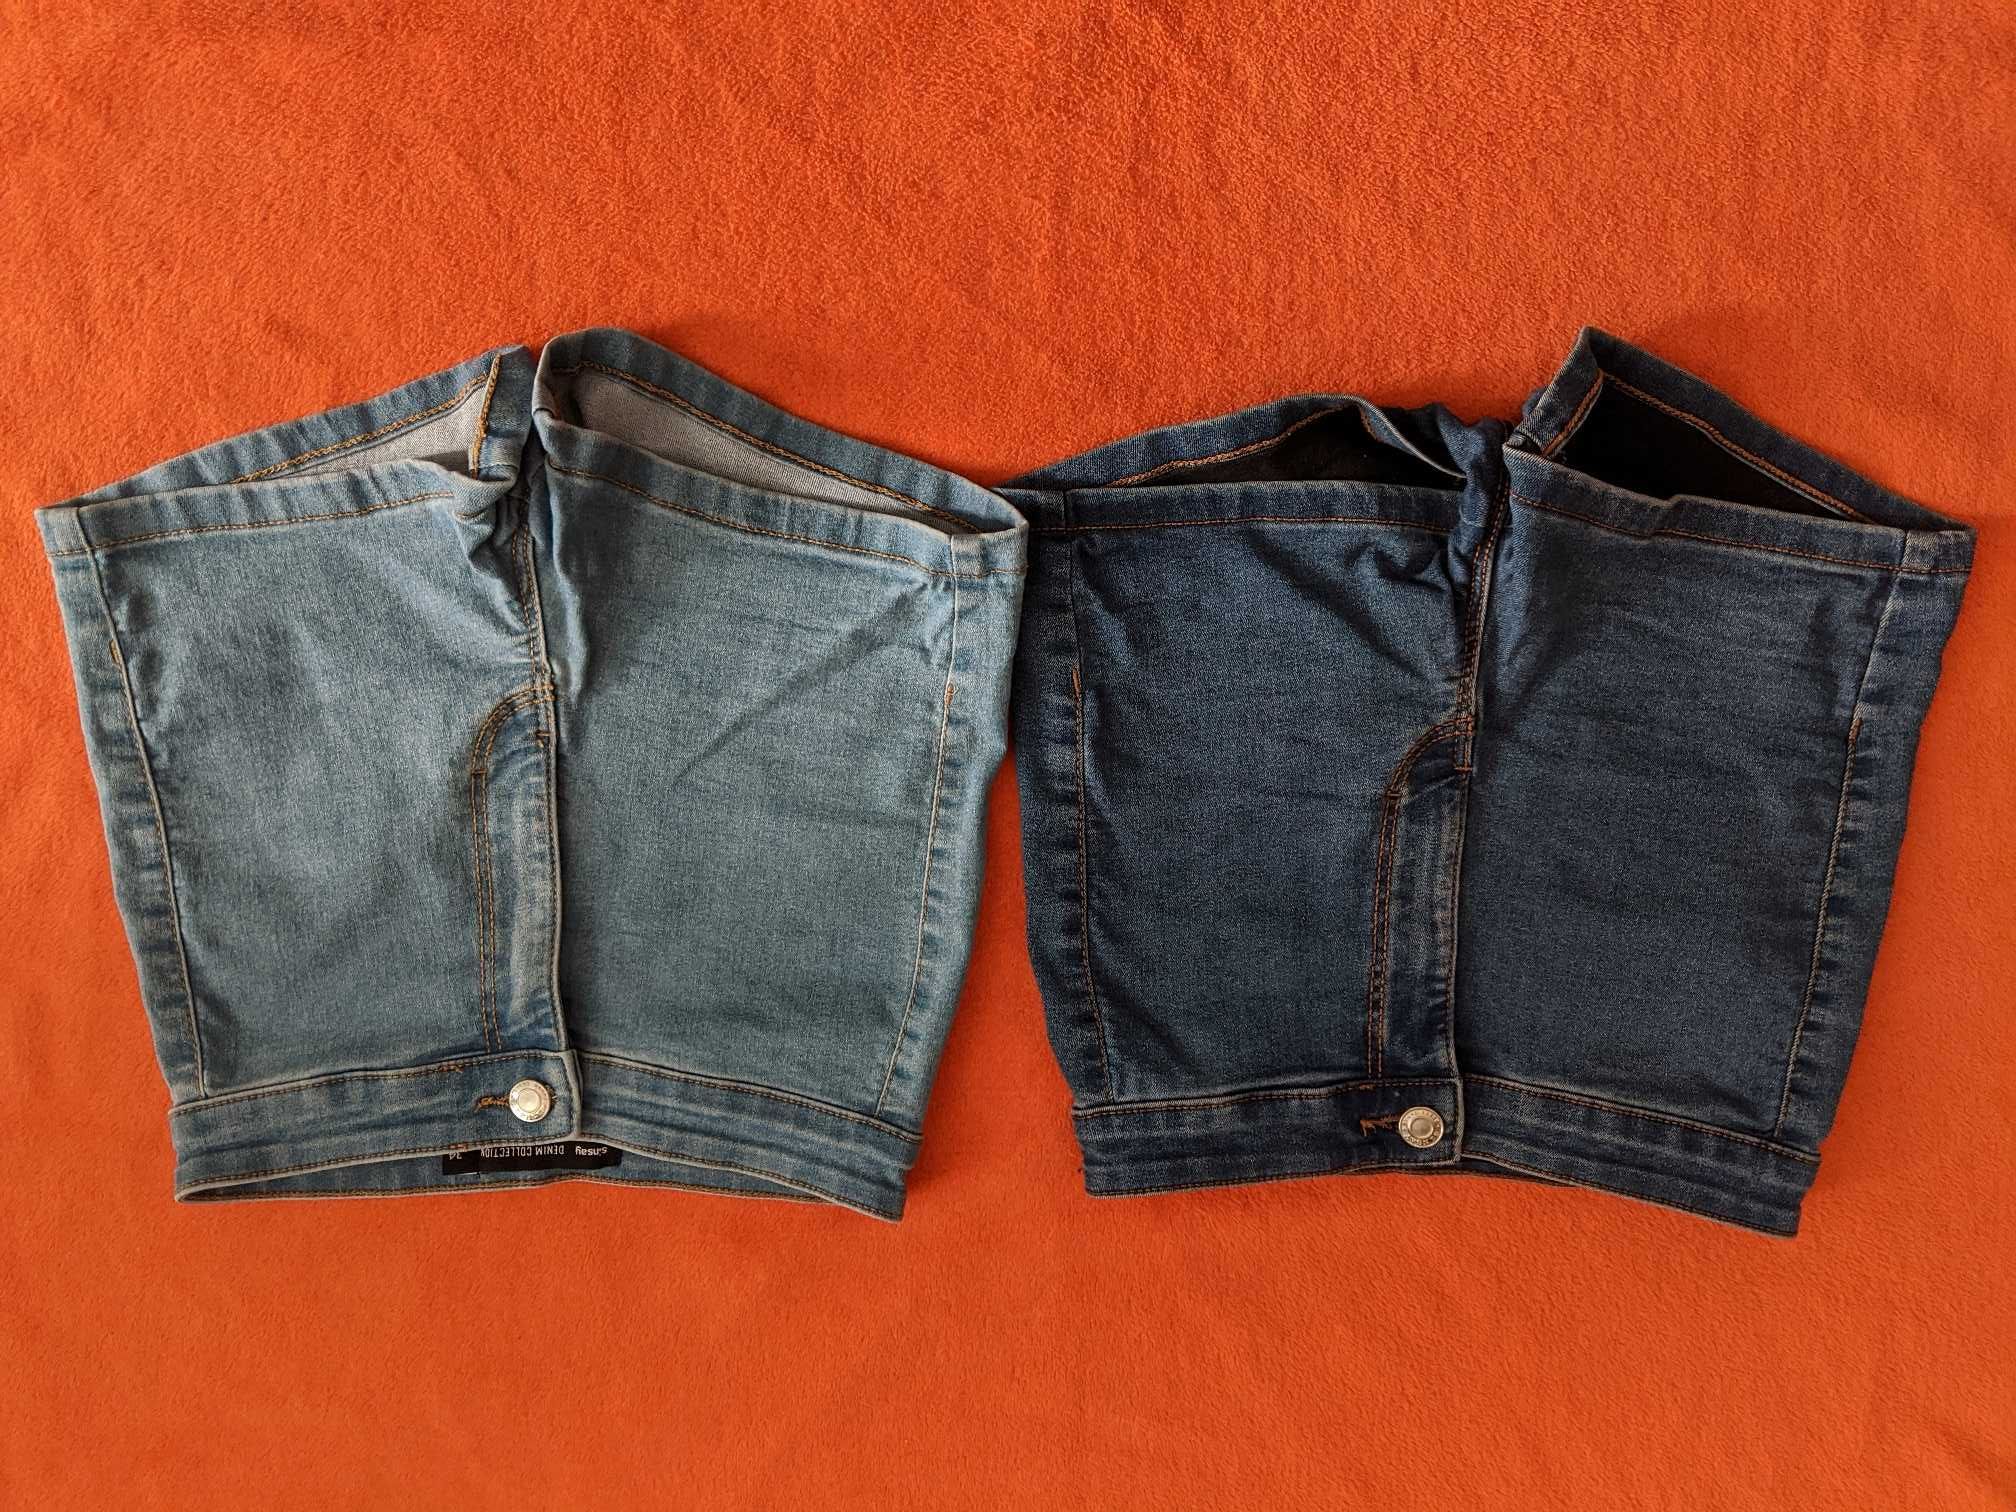 POLECAM ROZ 34 XS SINSAY spodenki szorty jeansowe cena za 2 pary